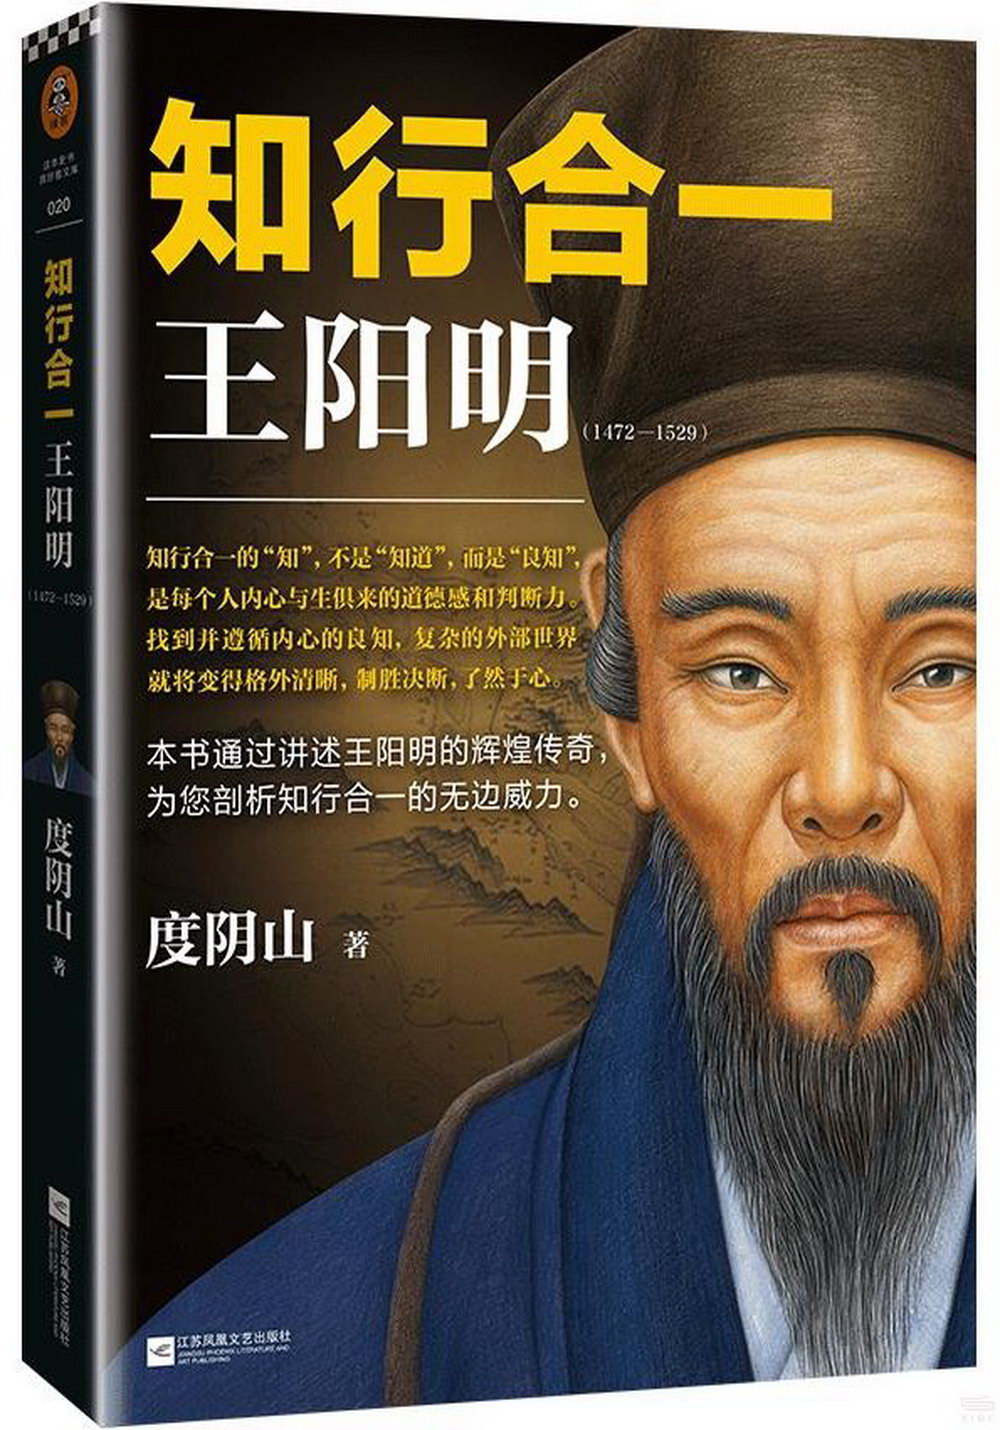 知行合一王陽明(1472-1529)